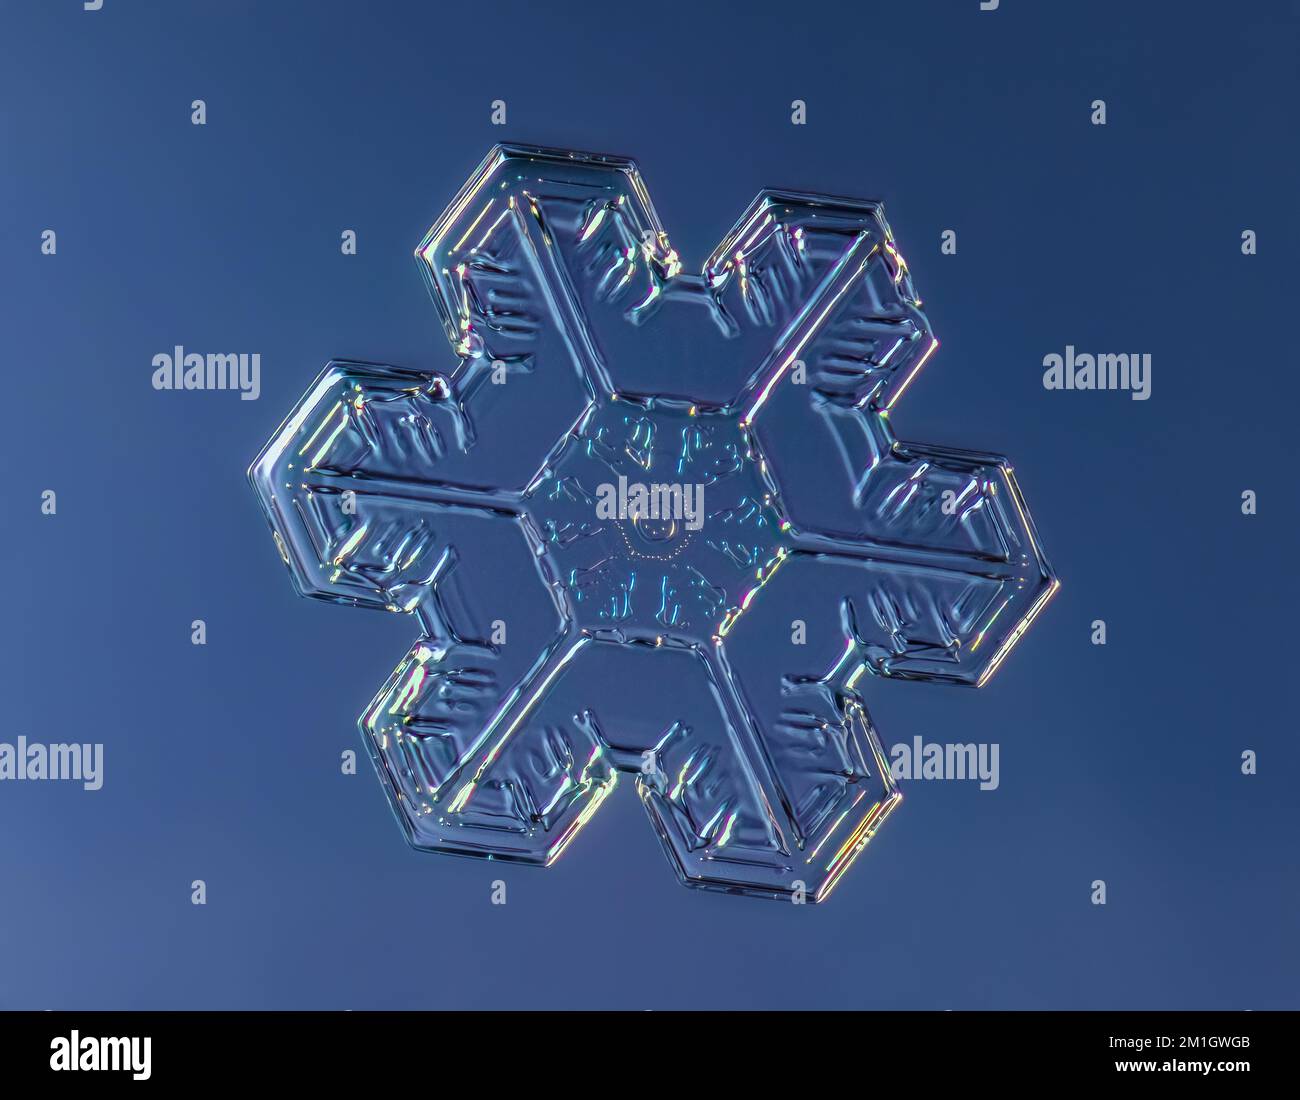 Schneeflocke auf gleichmäßigem Hintergrund. Makrofoto eines echten Schneekristalls auf Glasoberfläche. Das ist ein kleiner Schneeflockenkristall mit ungewöhnlichem Muster Stockfoto